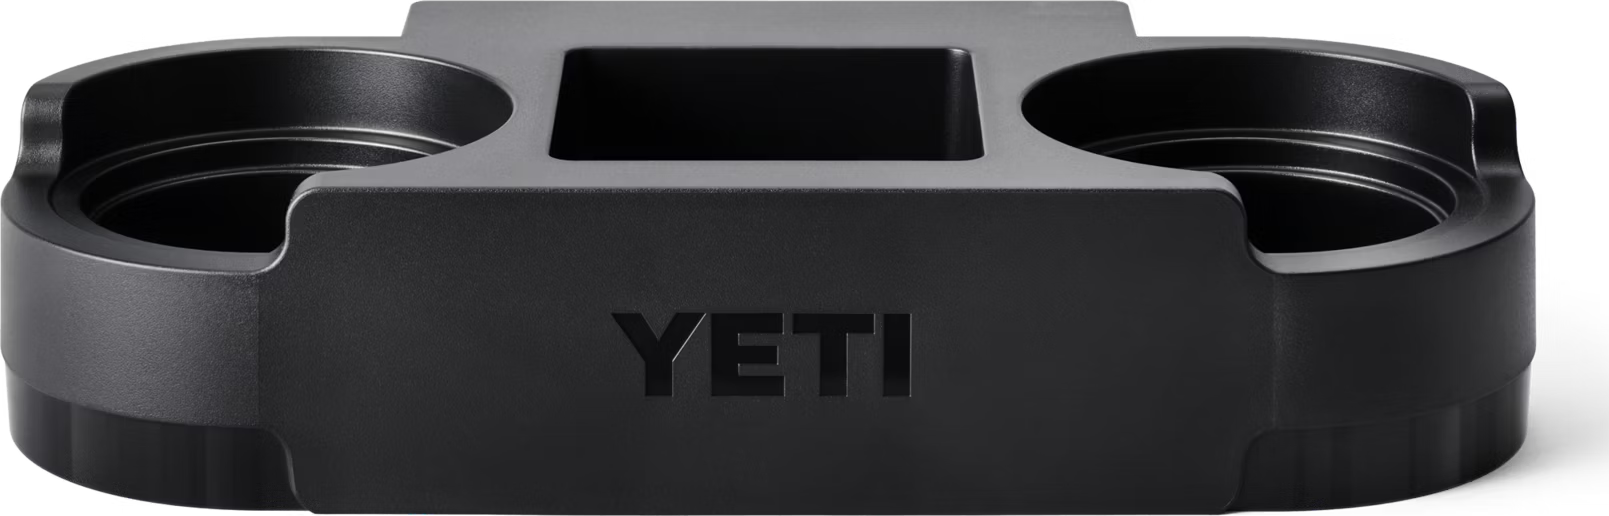 Yeti Roadie 48/60 Dual Cupholder Black